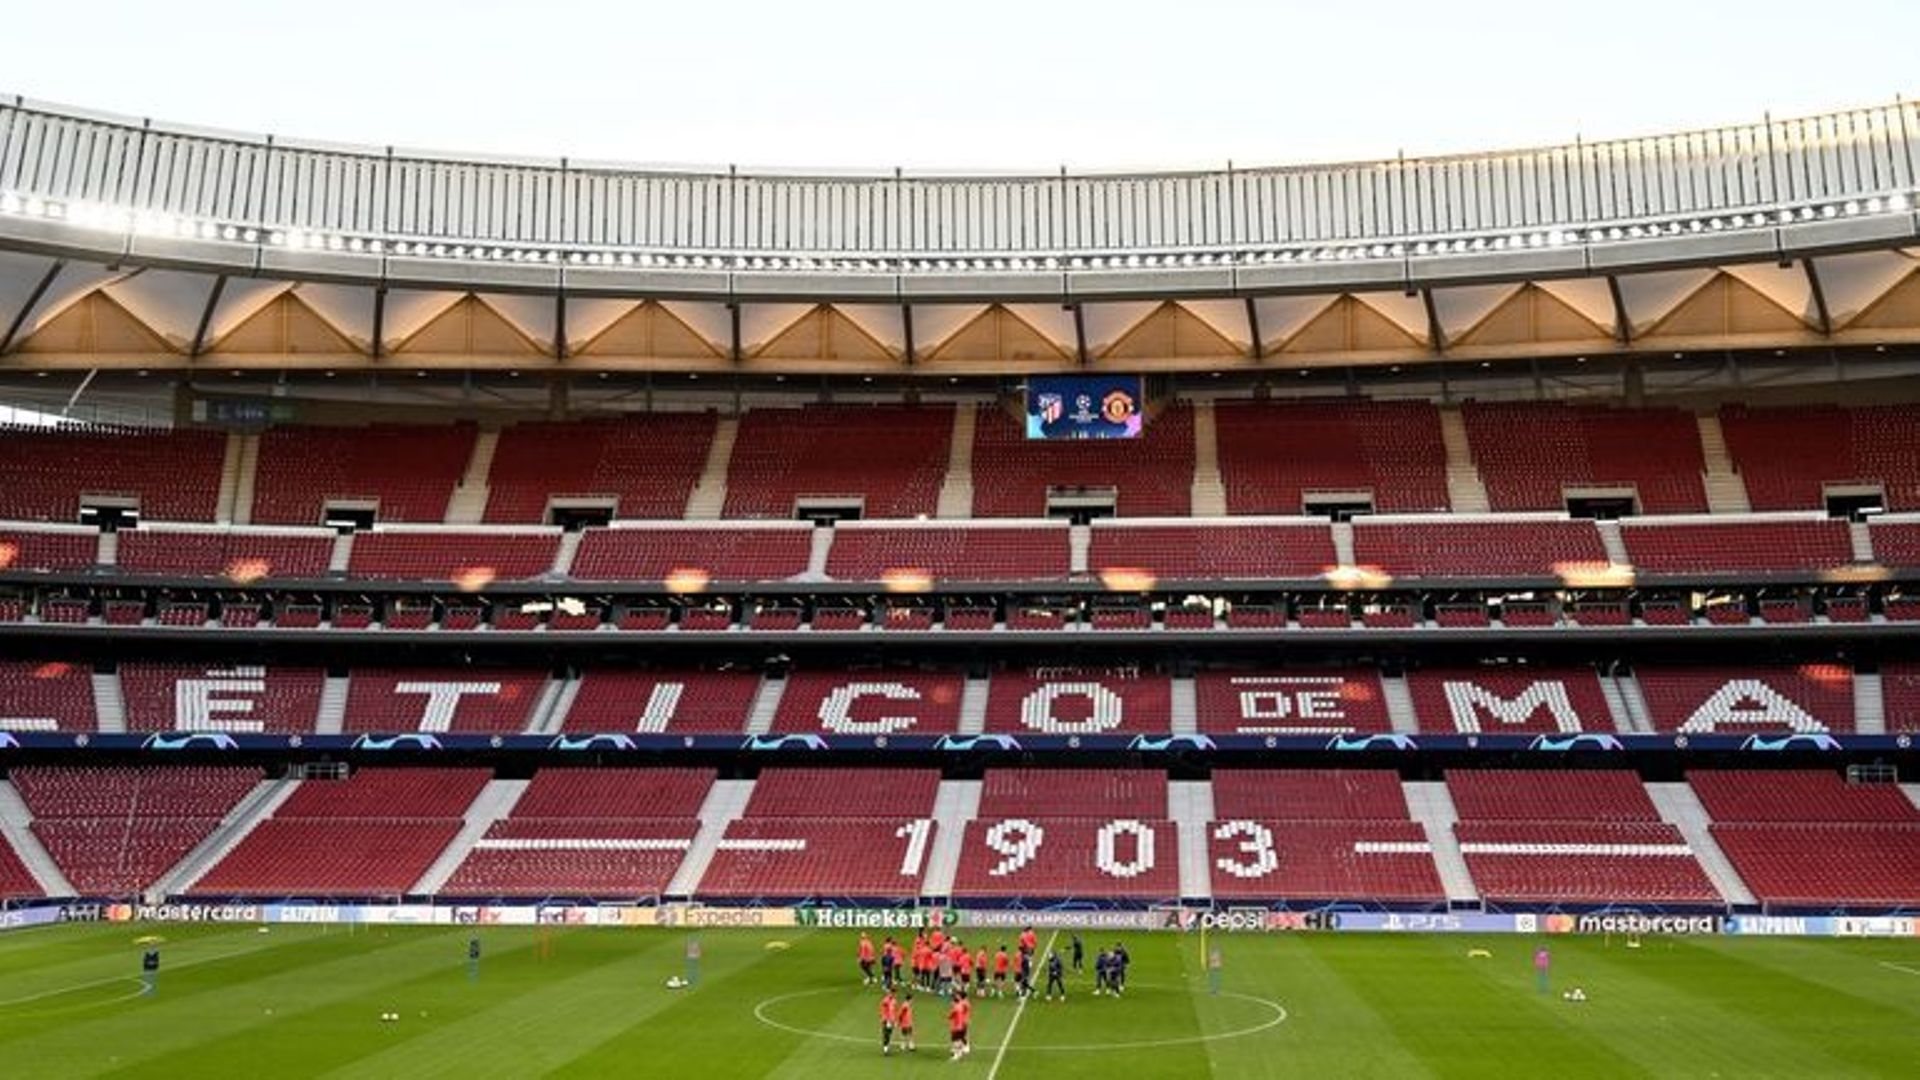 Le Wanda Metropolitano, qui peut accueillir 68.000 spectateurs, pourrait offrir une belle ovation aux coureurs.